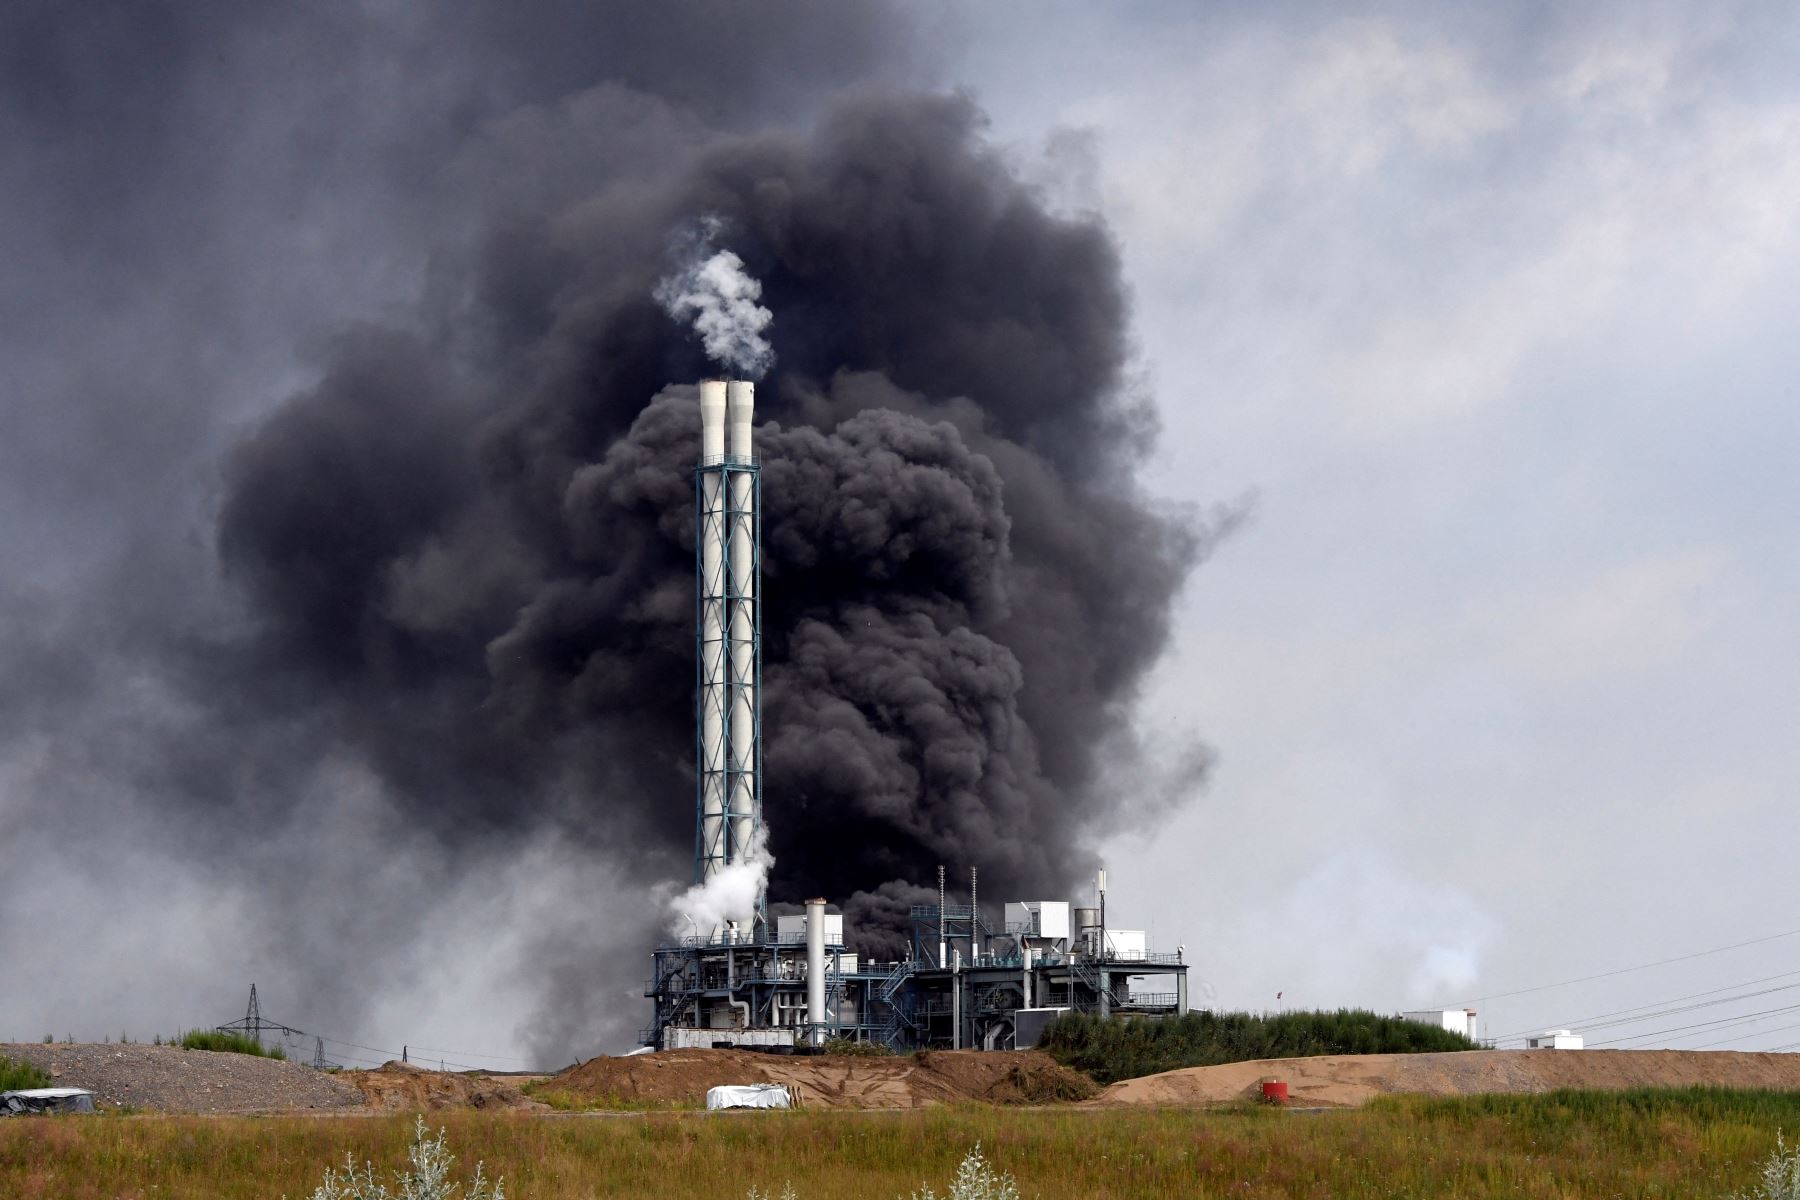 La planta se encuentra en el límite del parque industrial Chempark que reagrupa empresas del sector químico. Foto: AFP